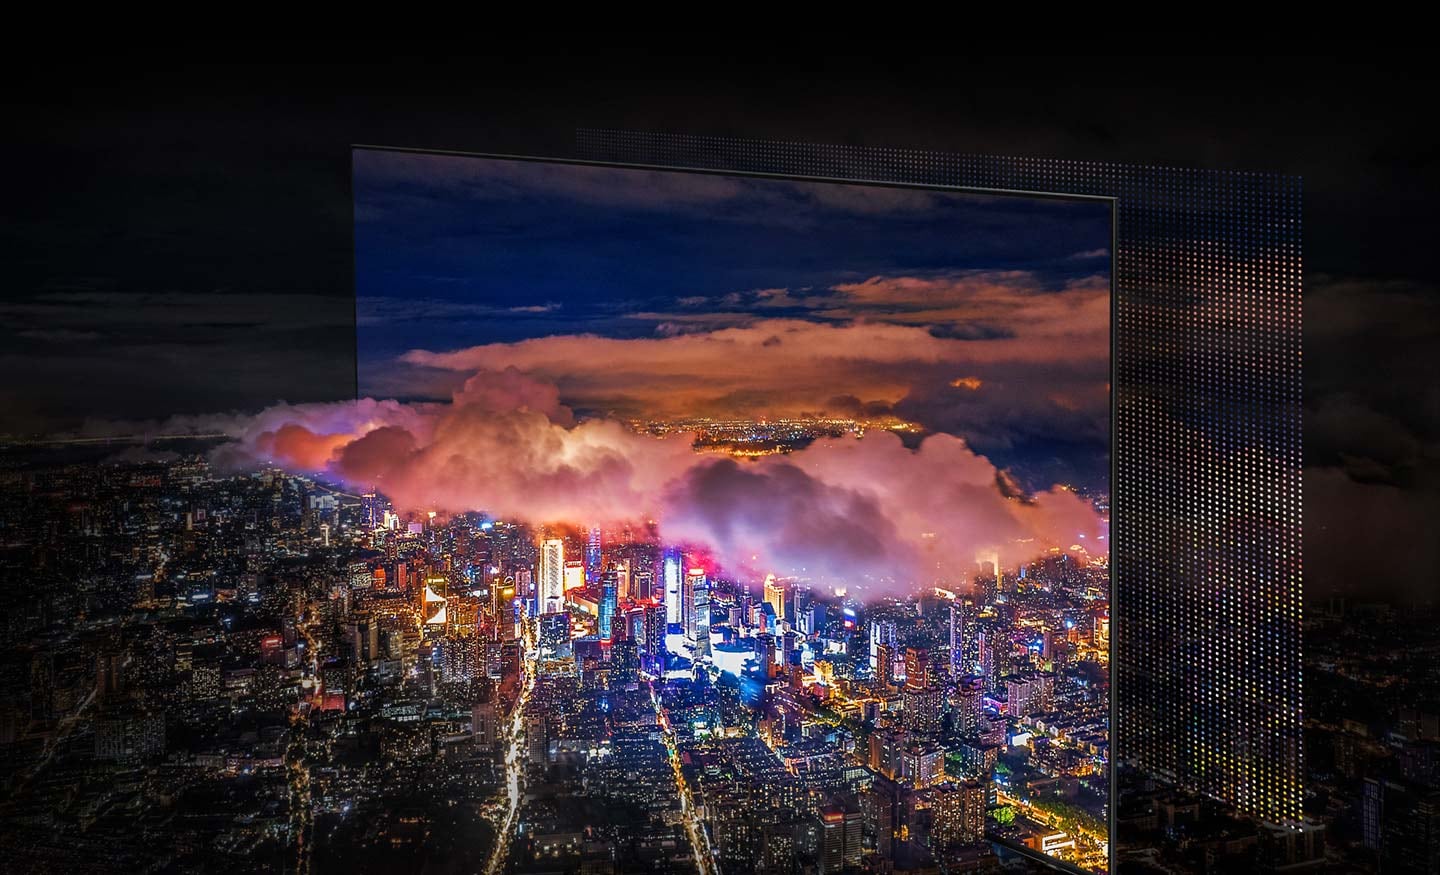 Je zobrazeno město osvětlené jasnými světly. Barvy a světla jsou živé, jako OLED světla zobrazují na obrazovce QD.